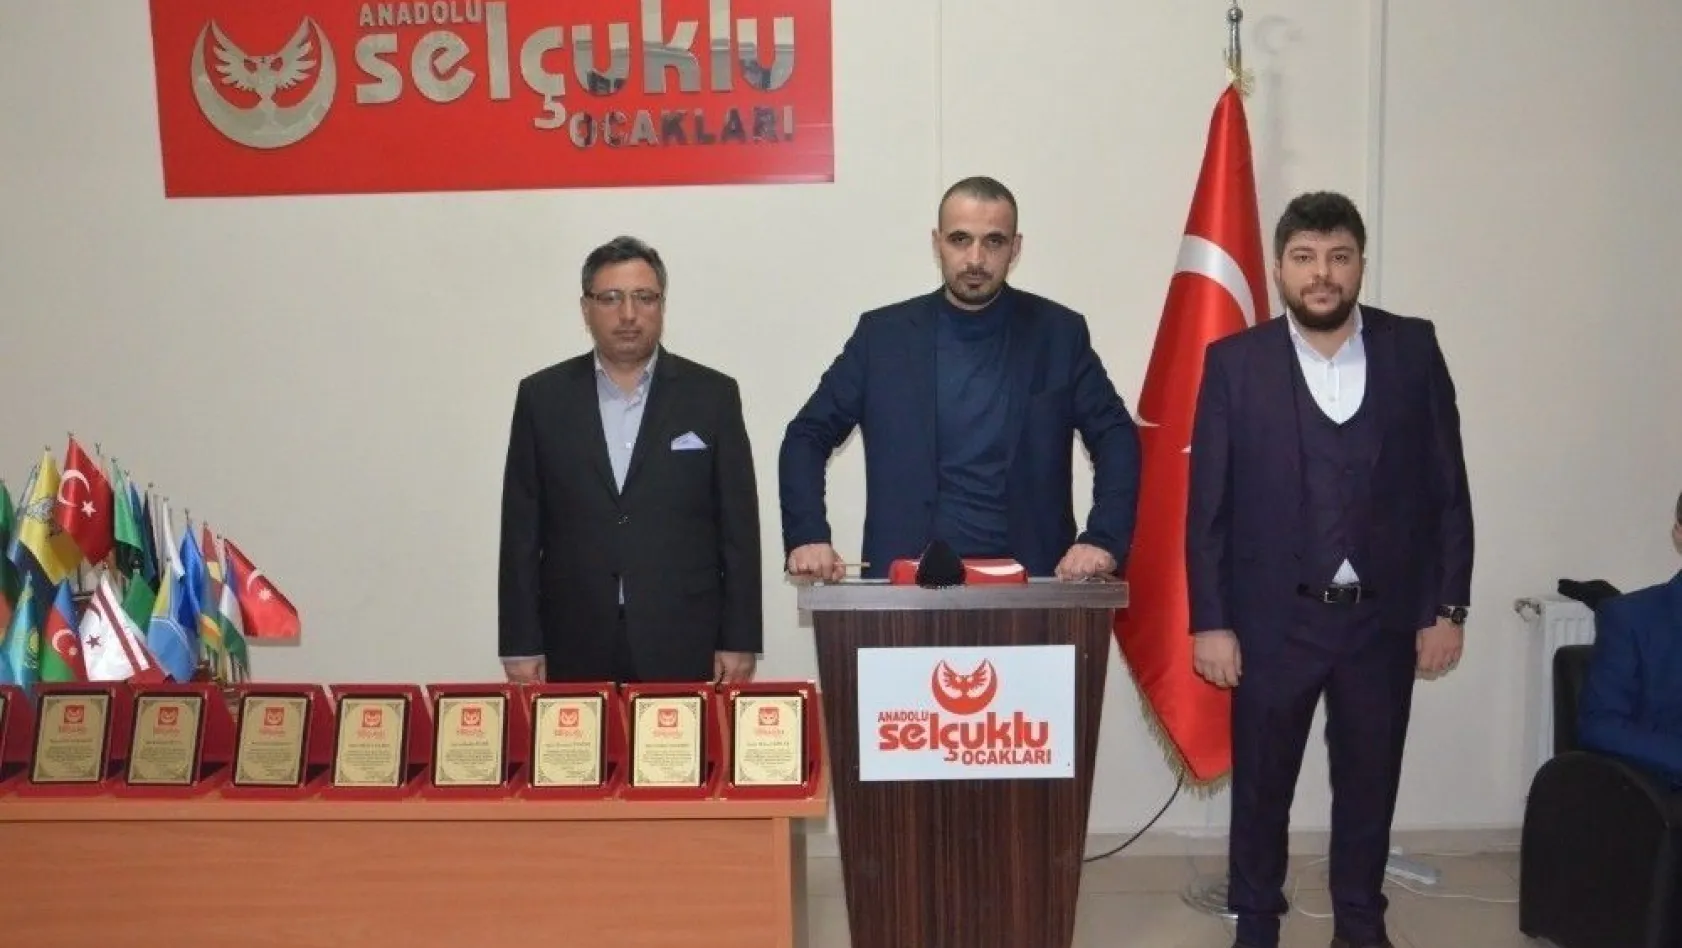 Anadolu Selçuklu Ocakları Malatya İl Başkanlığında görev değişimi
